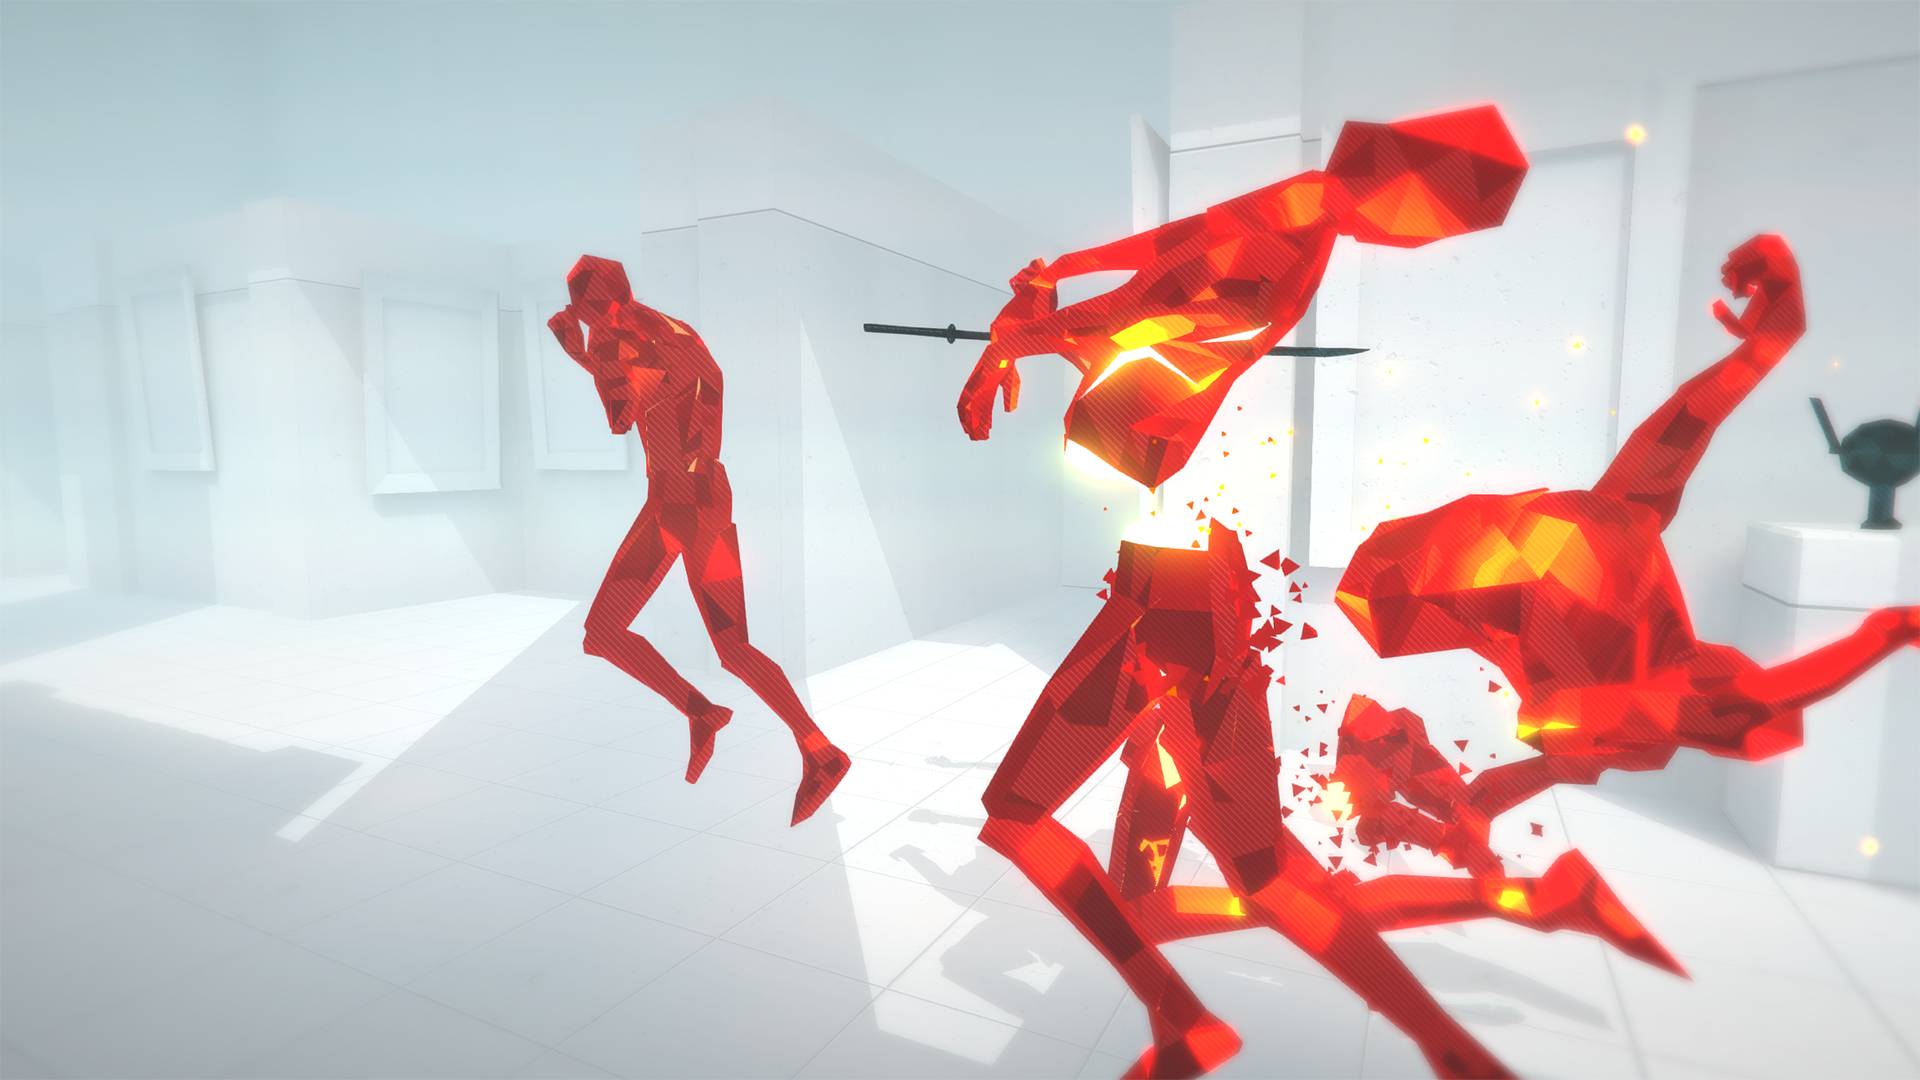 meilleurs jeux FPS : une silhouette humanoïde rouge en train de s'effondrer, avec une autre personne brandissant une arme à l'arrière-plan